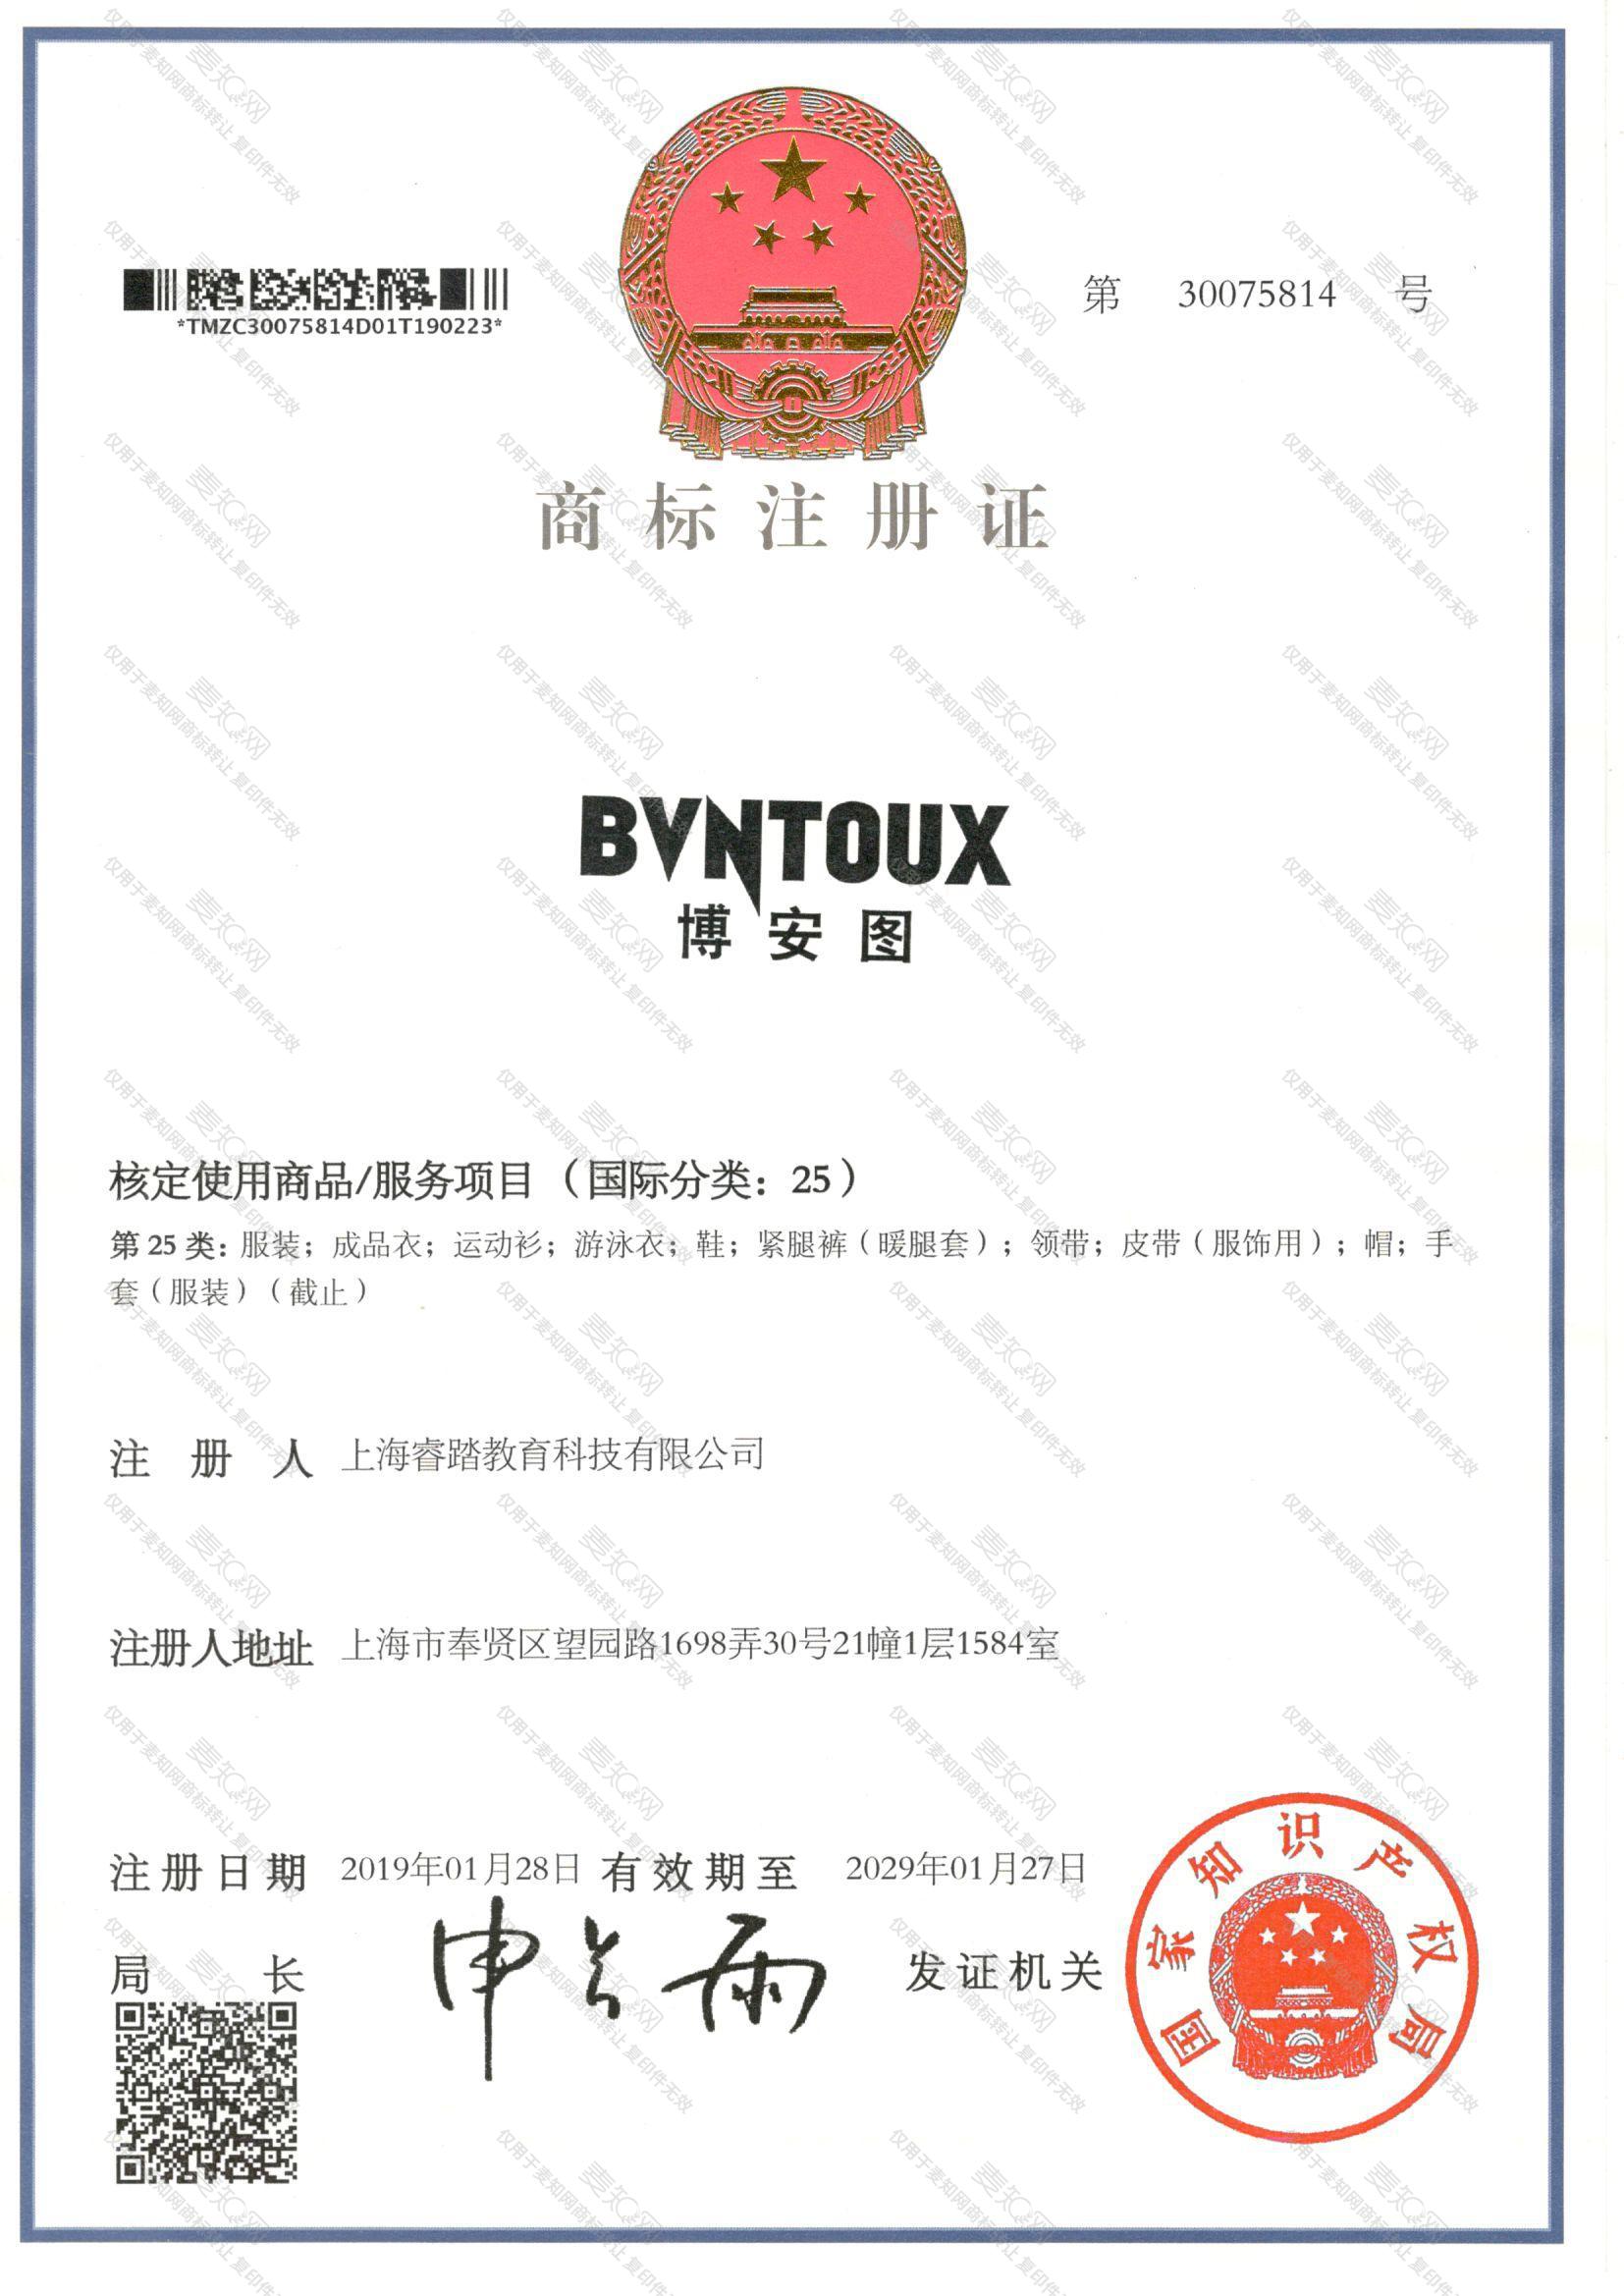 博安图 BVNTOUX注册证